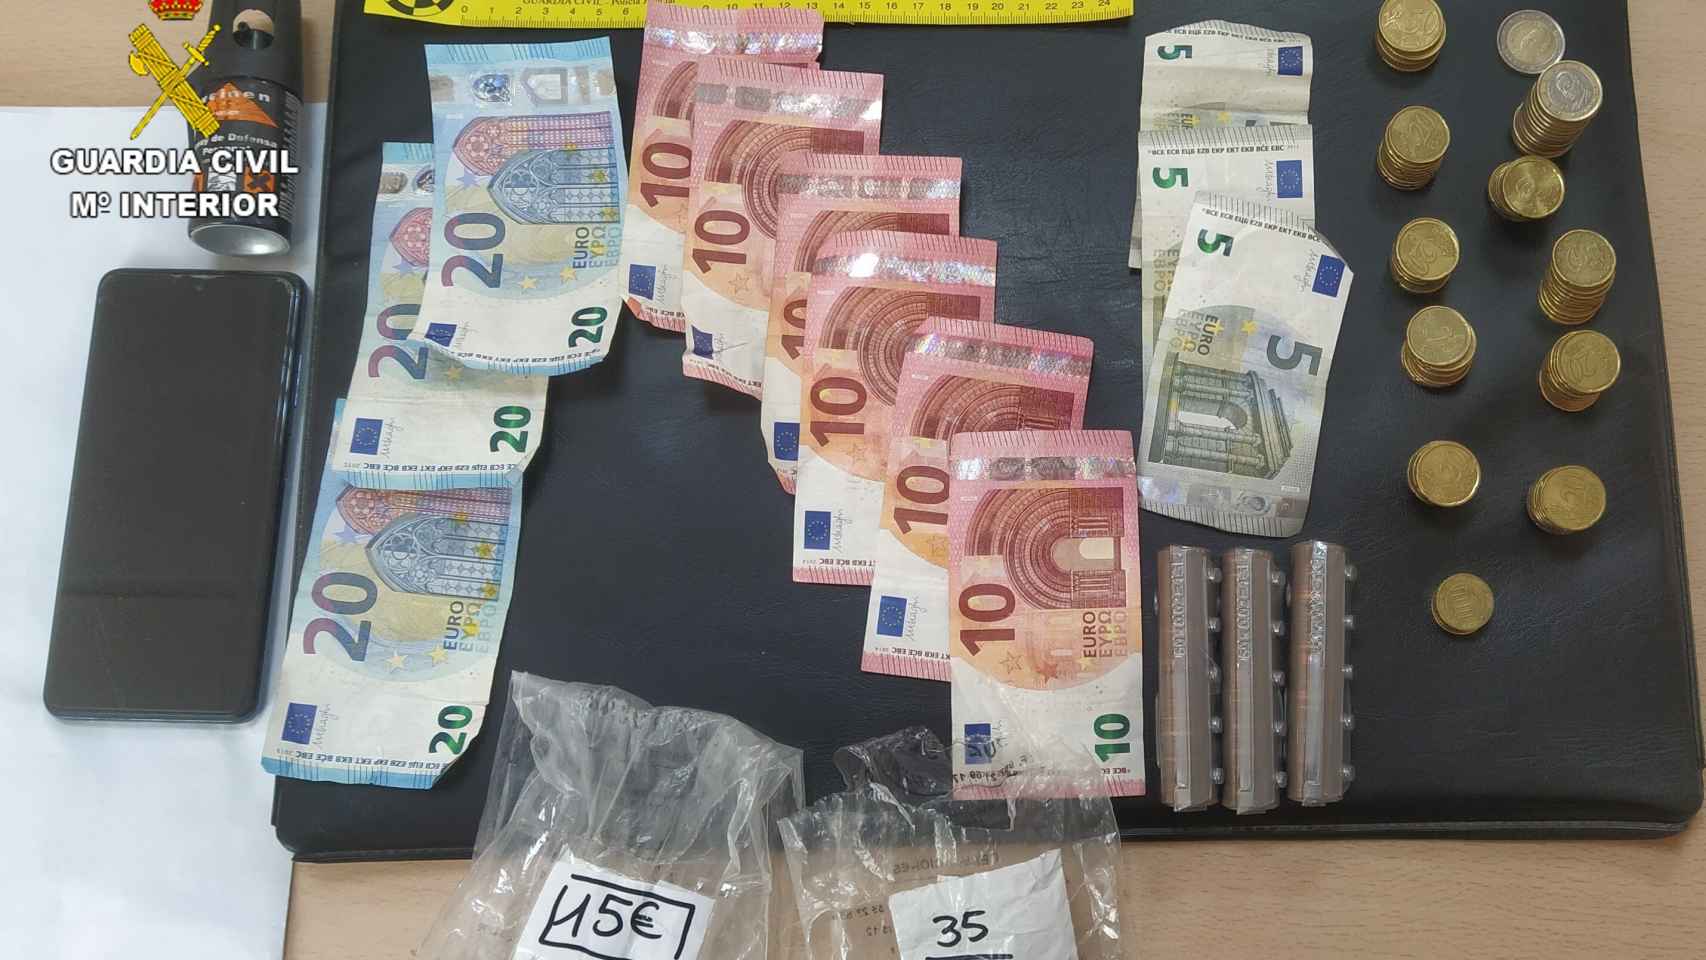 Teléfono móvil y dinero recuperado robo en Villacañas